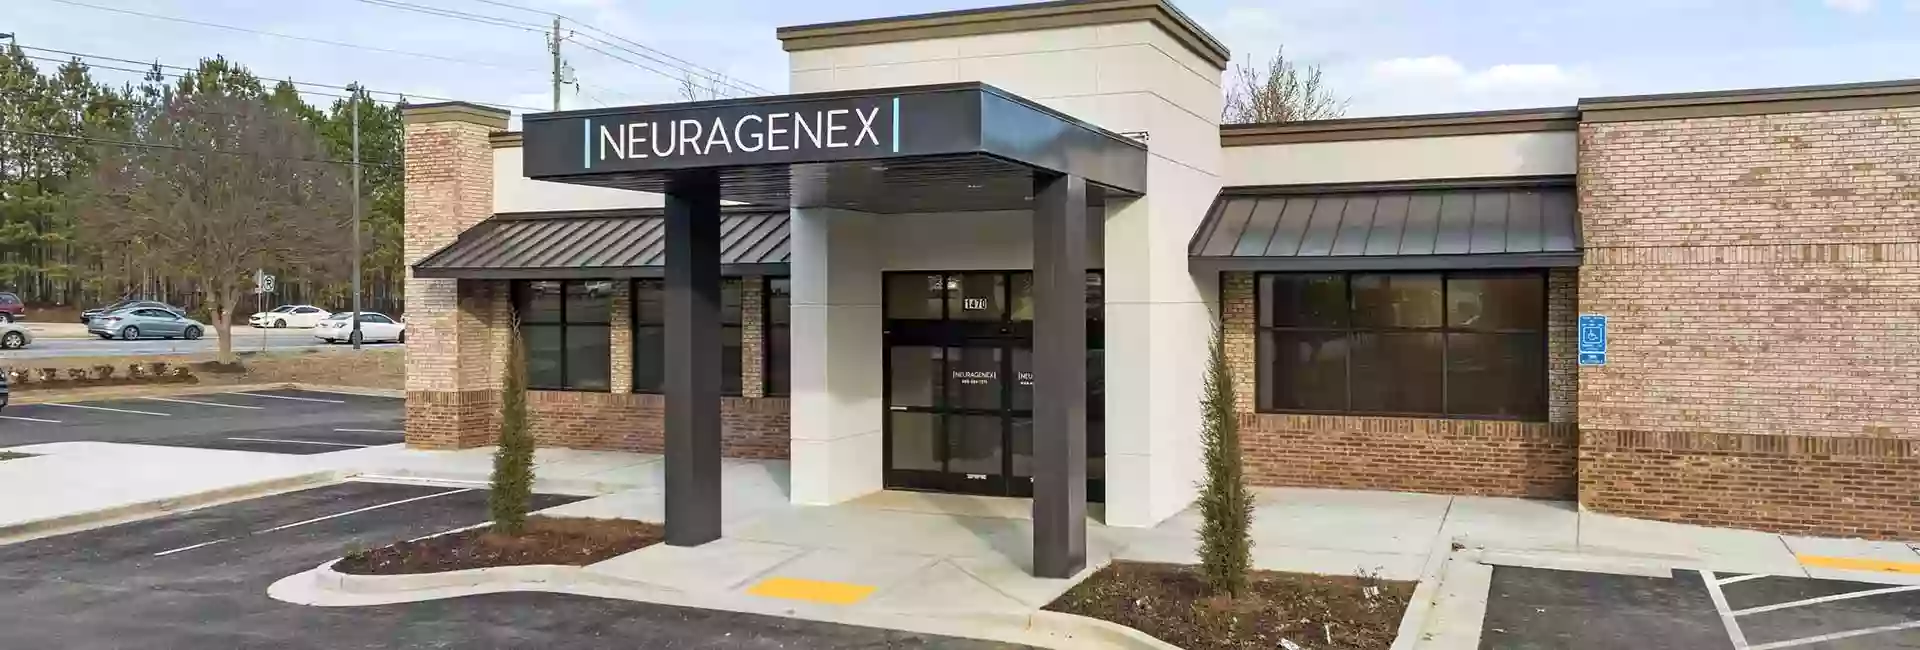 Neuragenex - Pain Management Clinic - Lawrenceville